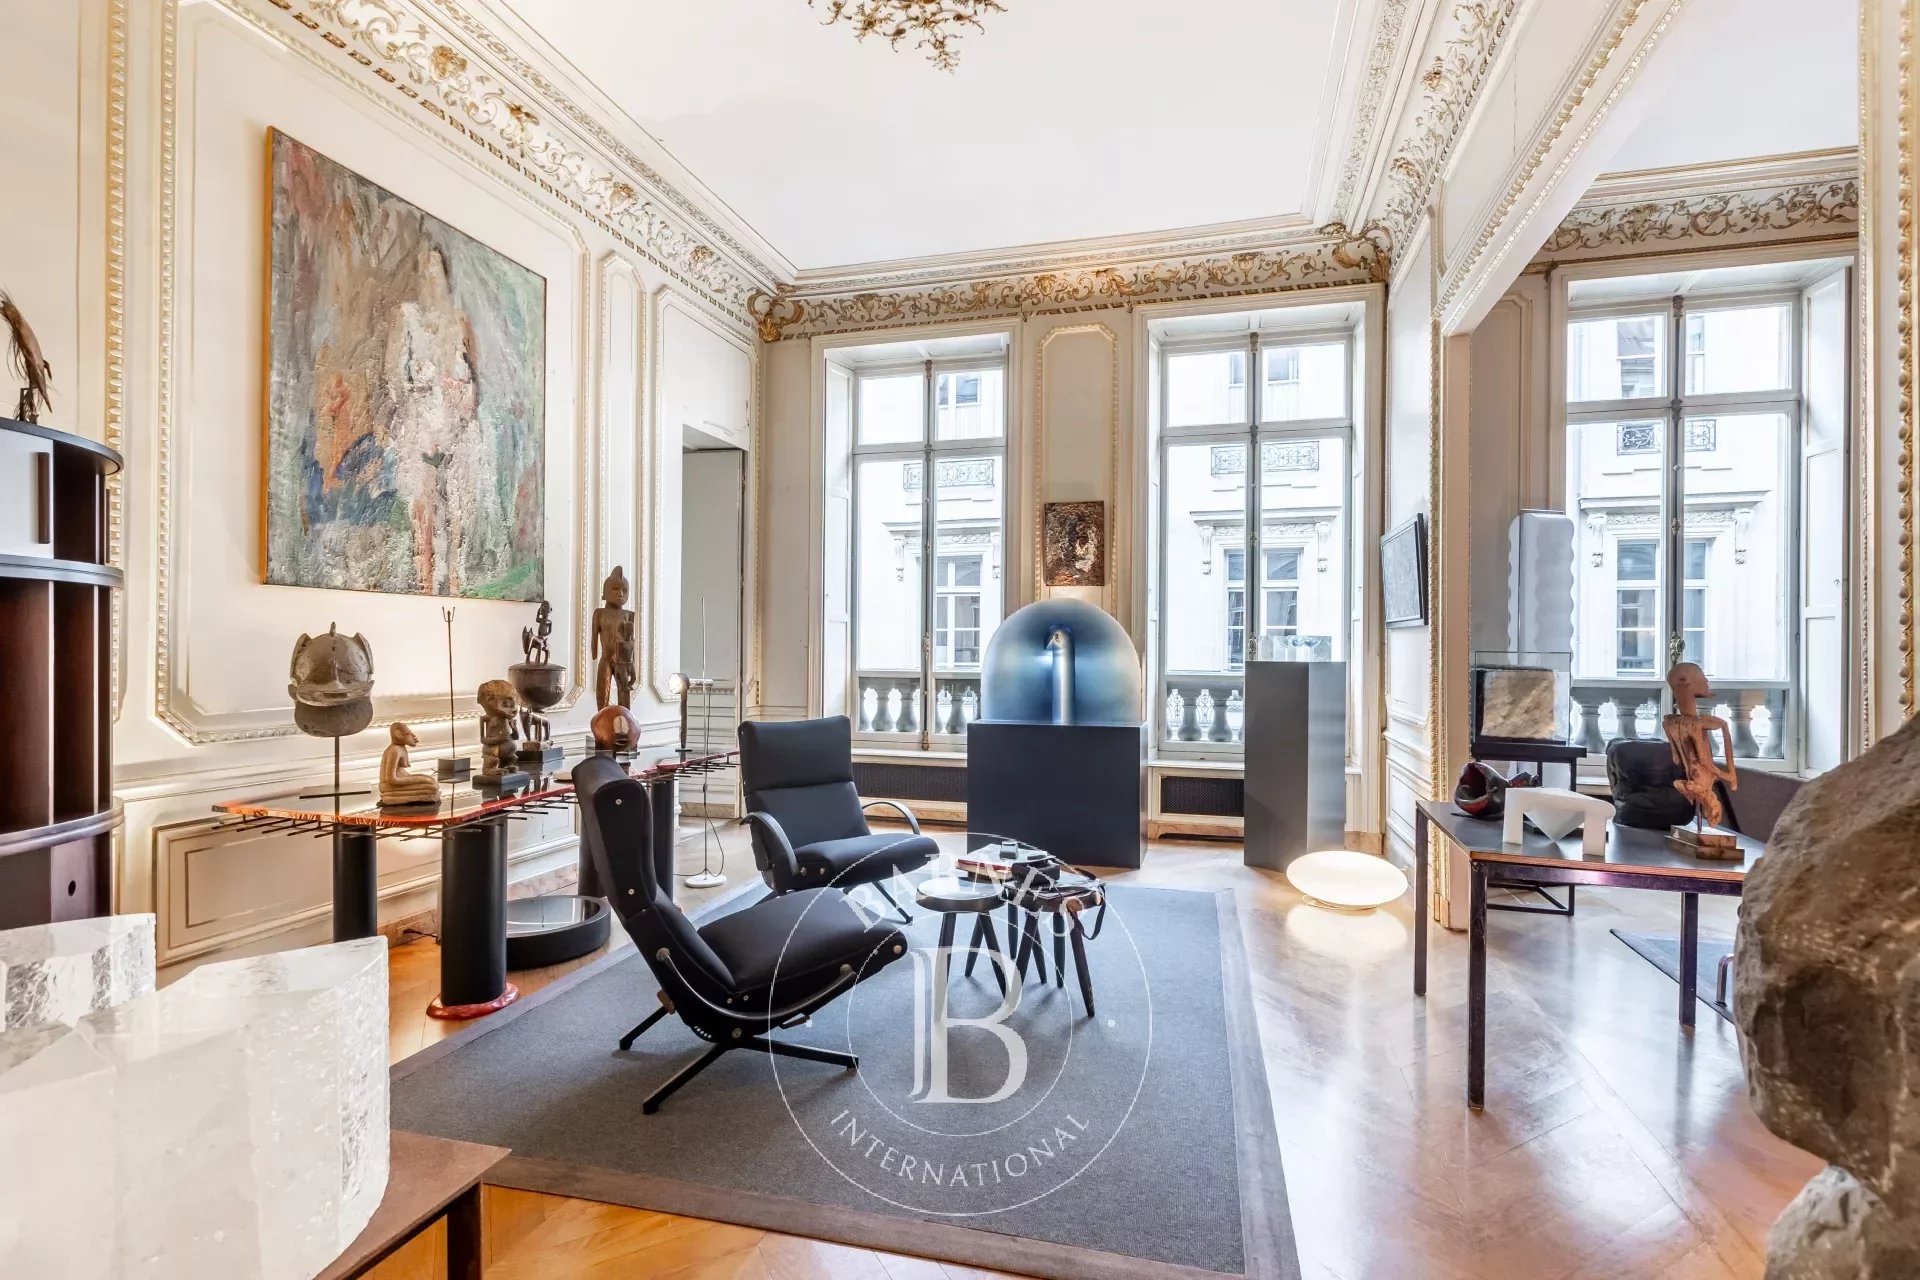 Exclusivité - Paris 1er - Concorde Place Vendôme - Appartement avec grande hauteur sous plafond - 4 chambres